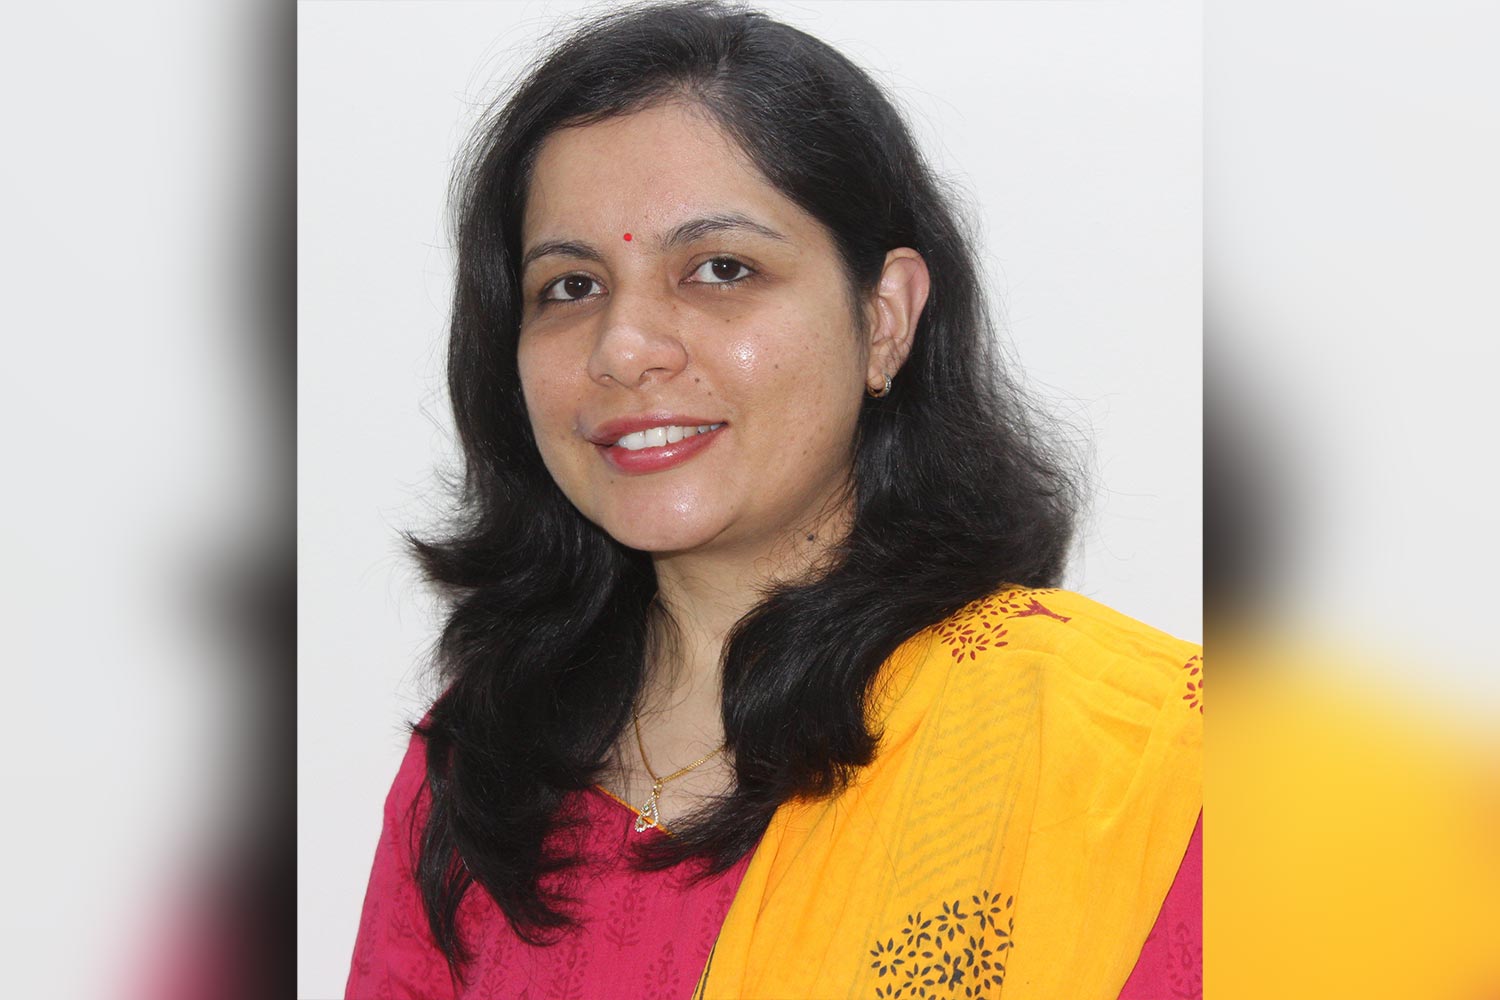 Ms. Neha Shivani